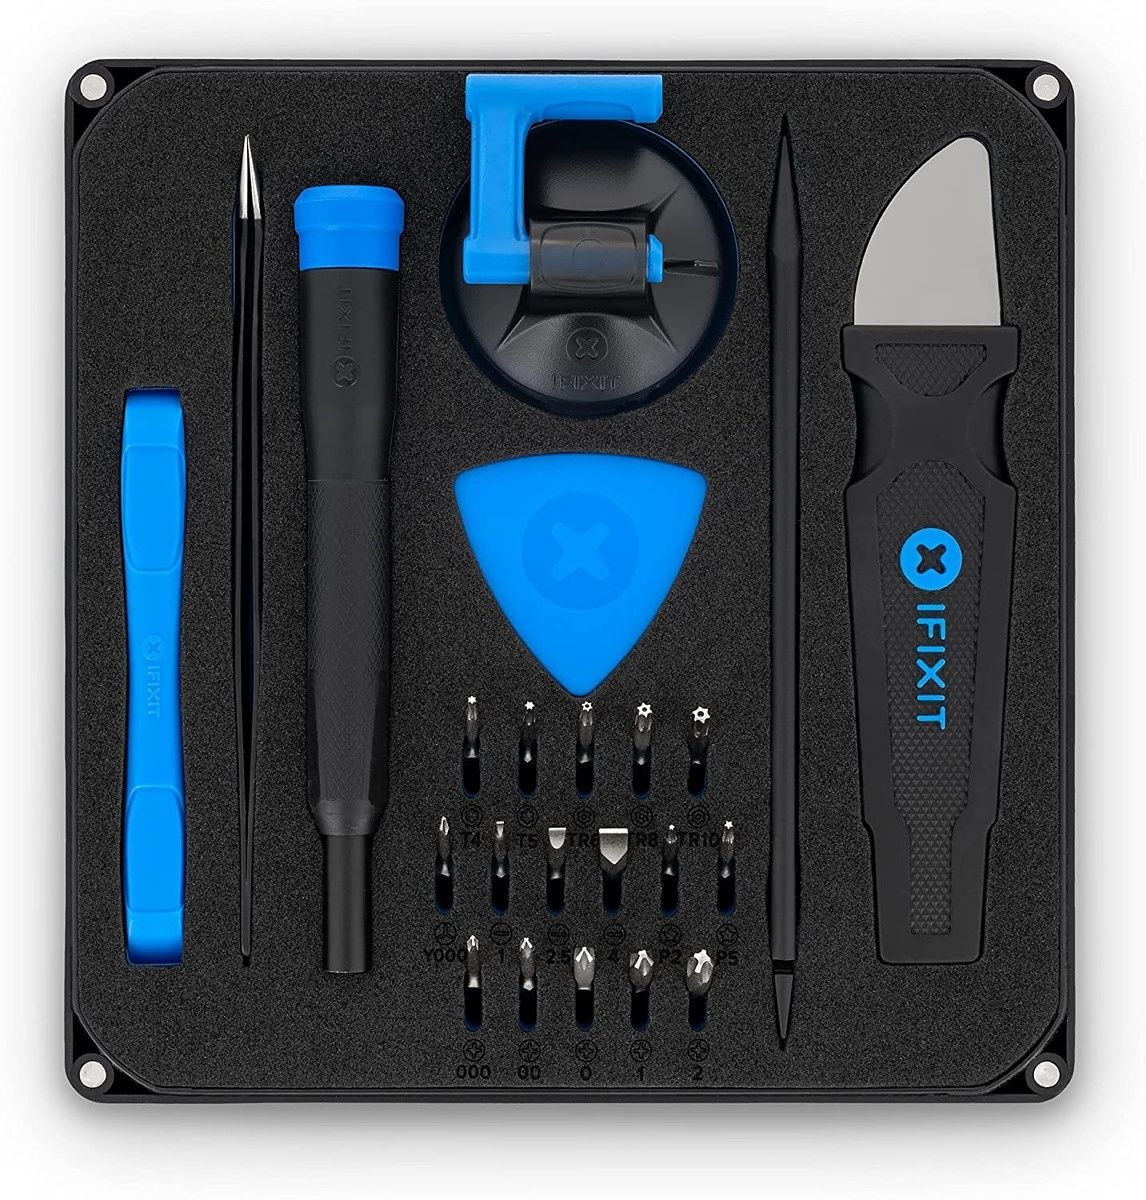 Cette boîte à outils iFixit comprend 16 embouts de précision, un spudger, une ventouse et d'autres outils pour vous aider à pénétrer à l'intérieur de votre ordinateur portable et d'autres appareils électroniques.